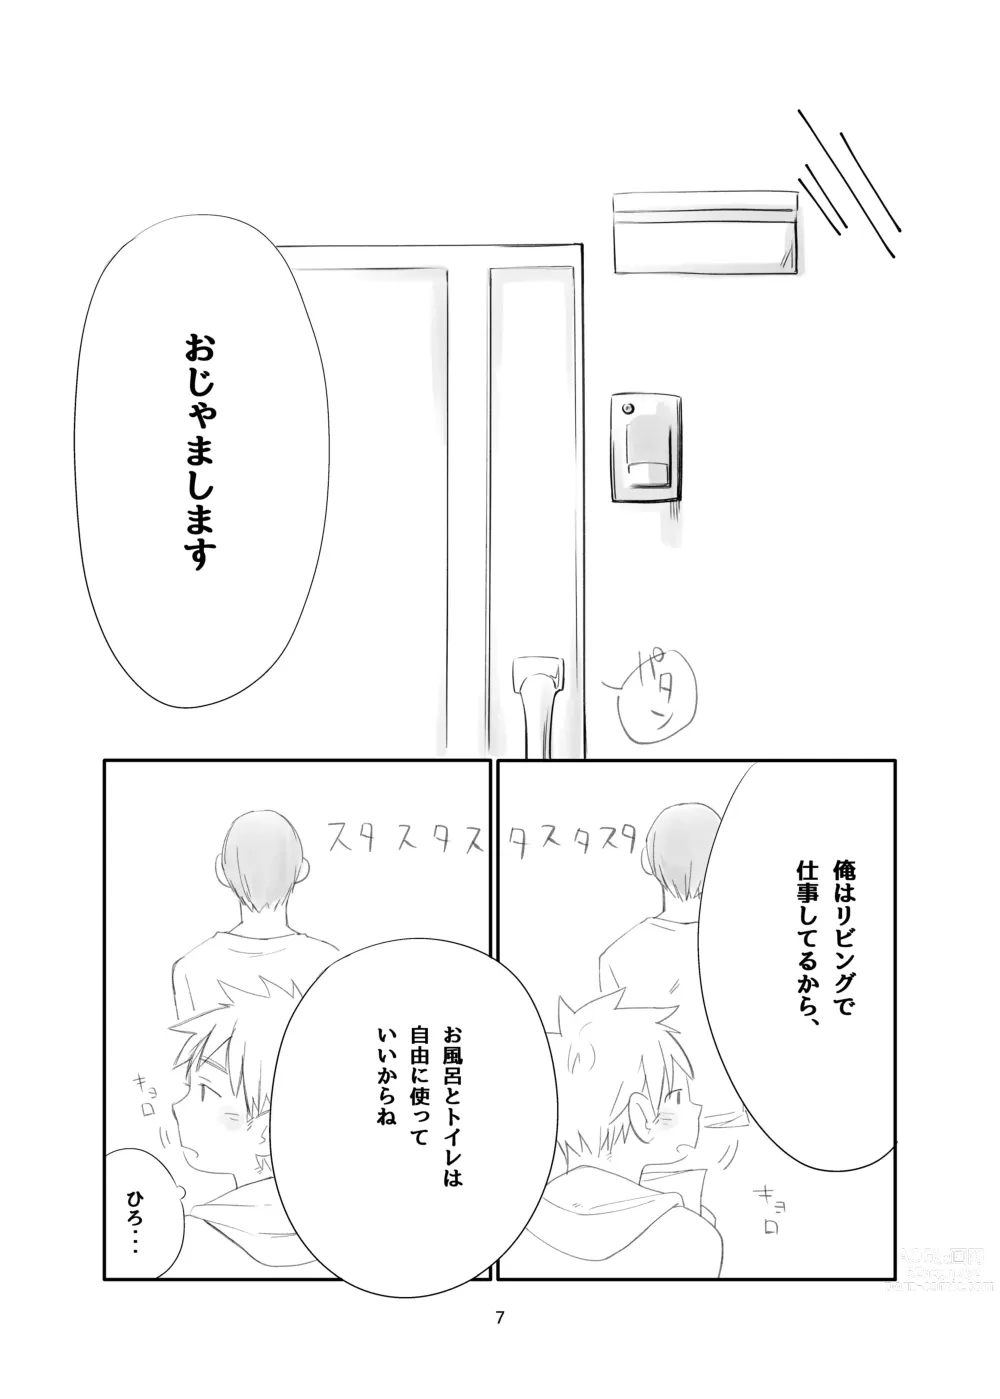 Page 7 of doujinshi Tonari wa Nani o suru Jinzo